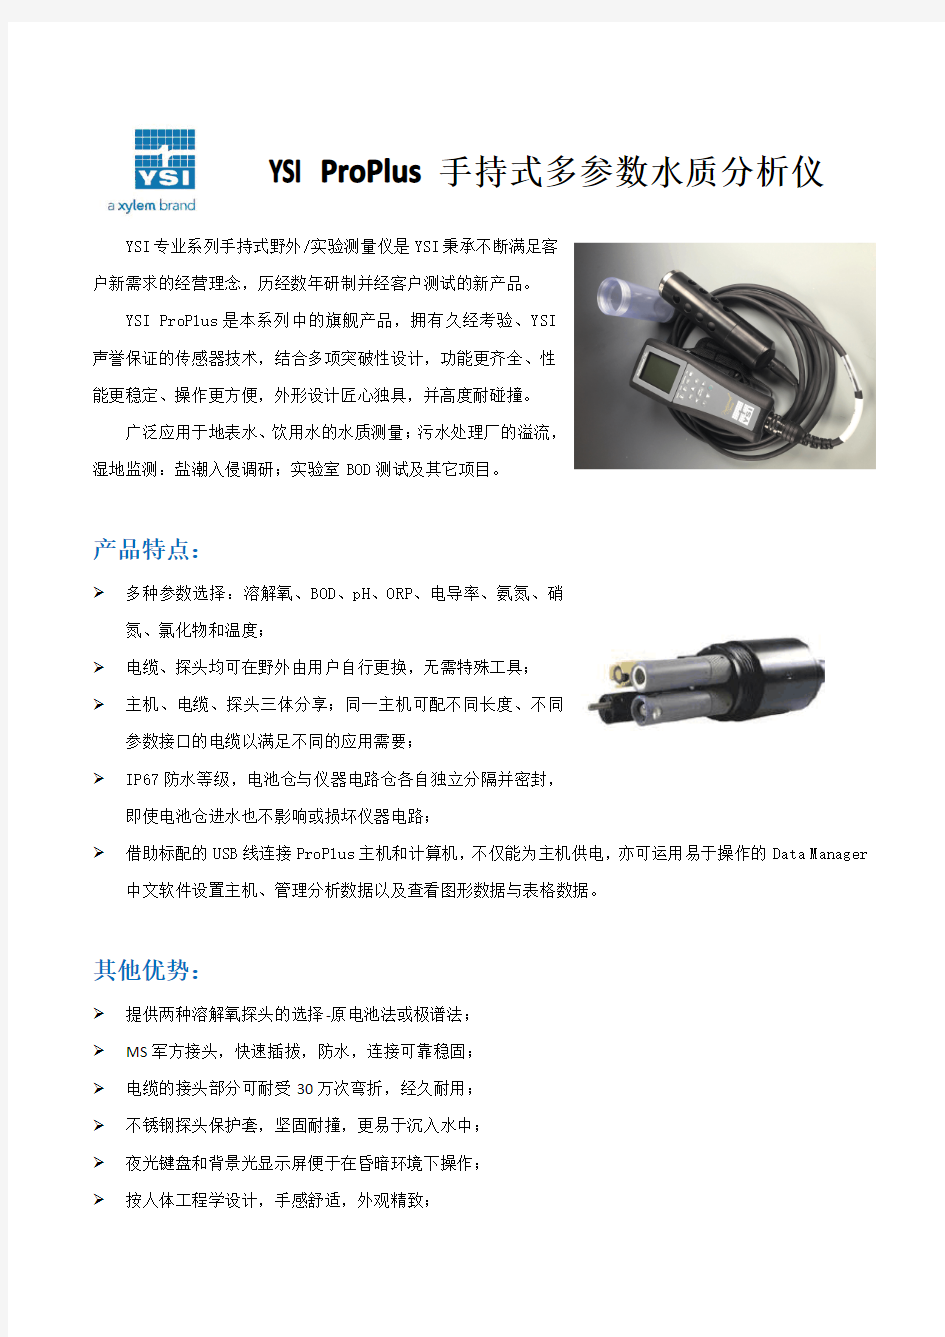 YSI ProPlus手持式多参数水质分析仪 中文样本